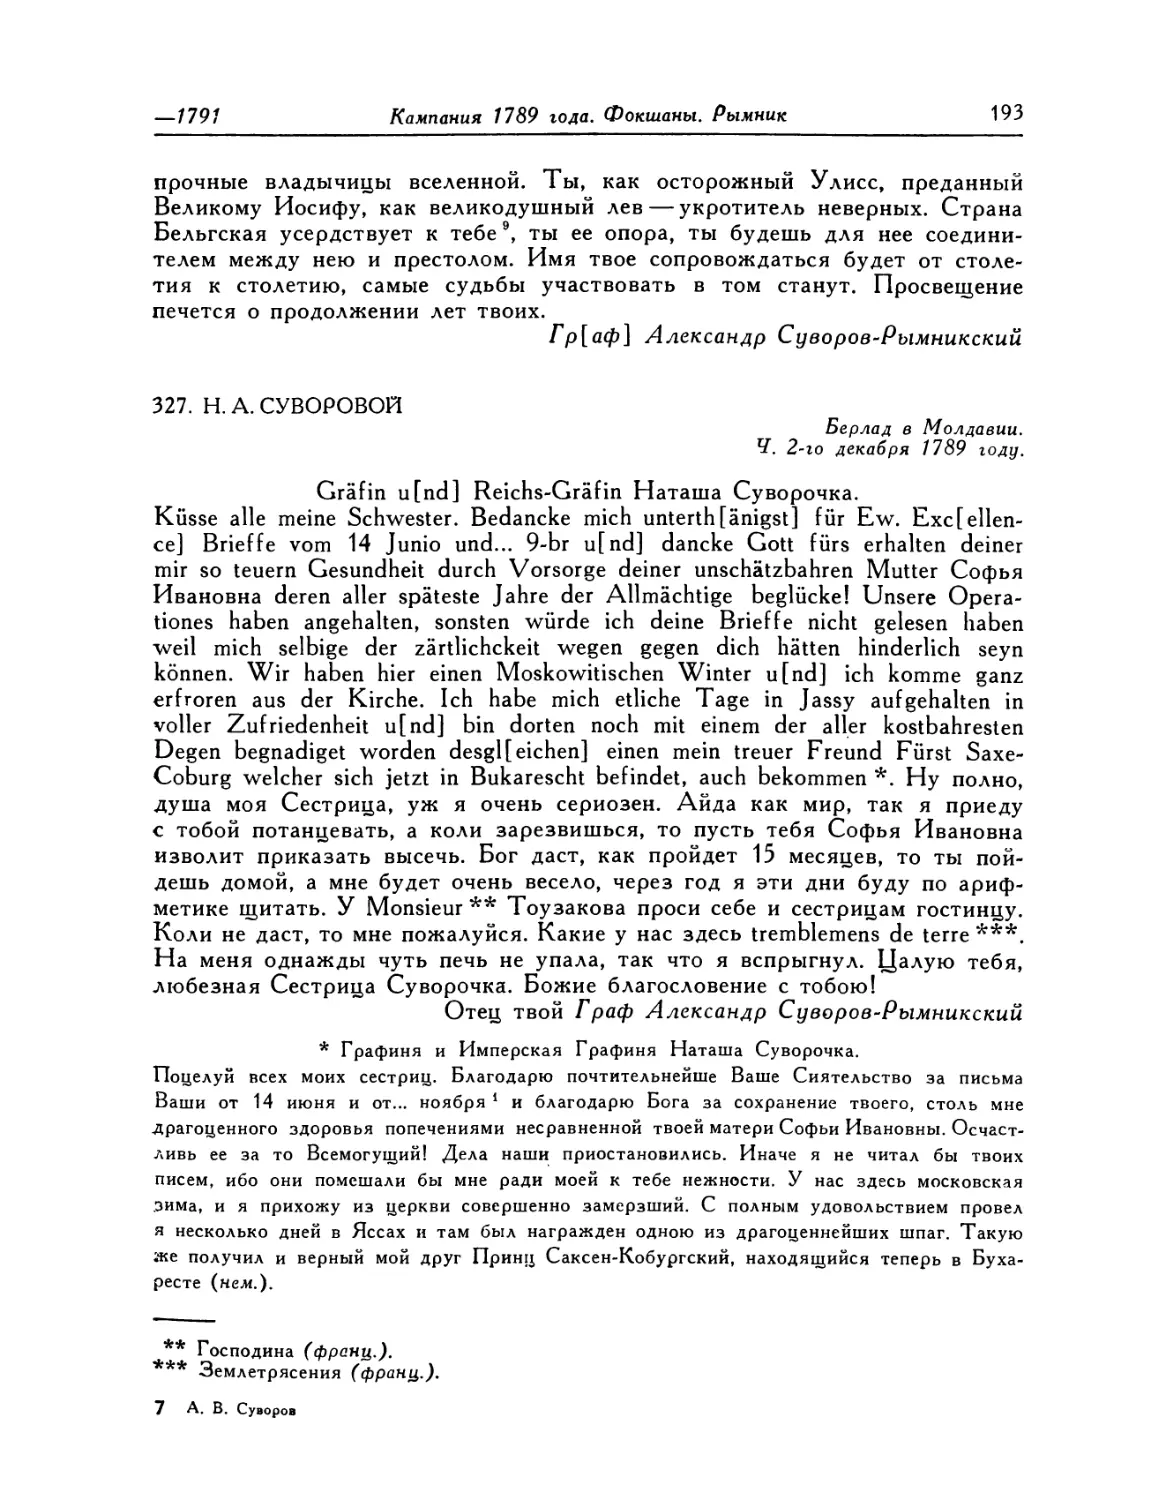 327. Н. А. Суворовой. 2.XII.1789